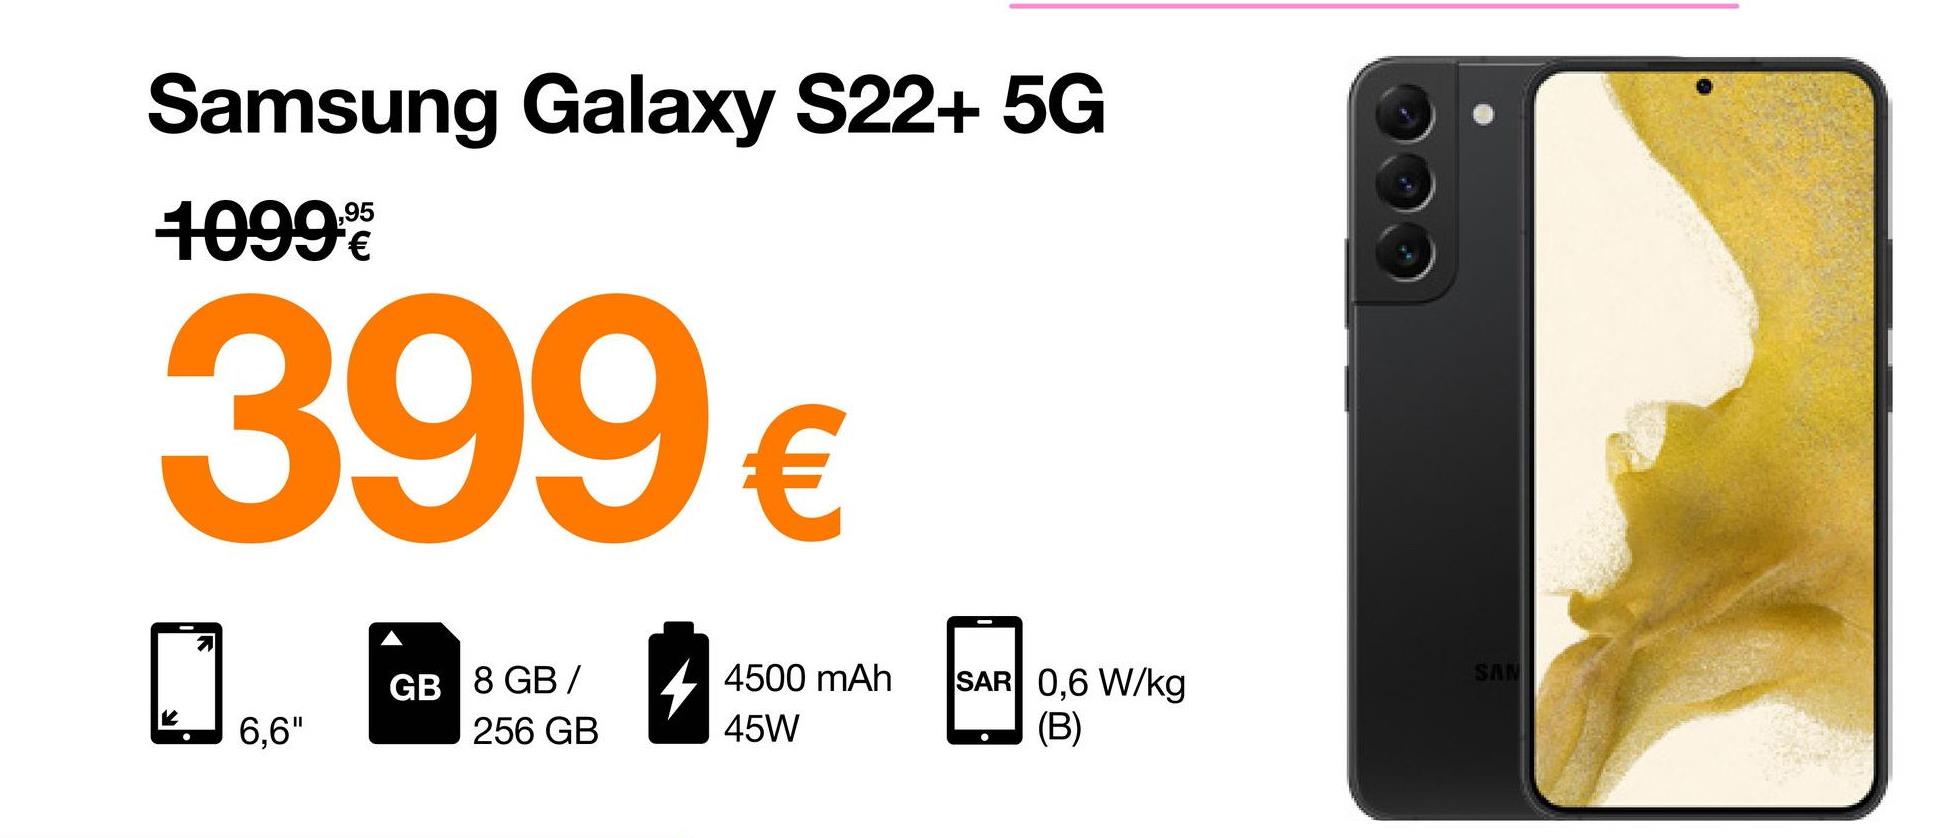 Samsung Galaxy S22+ 5G
95
10999
399 €
GB 8 GB/
K
6,6"
256 GB
4500 mAh SAR 0,6 W/kg
(B)
45W
SAN